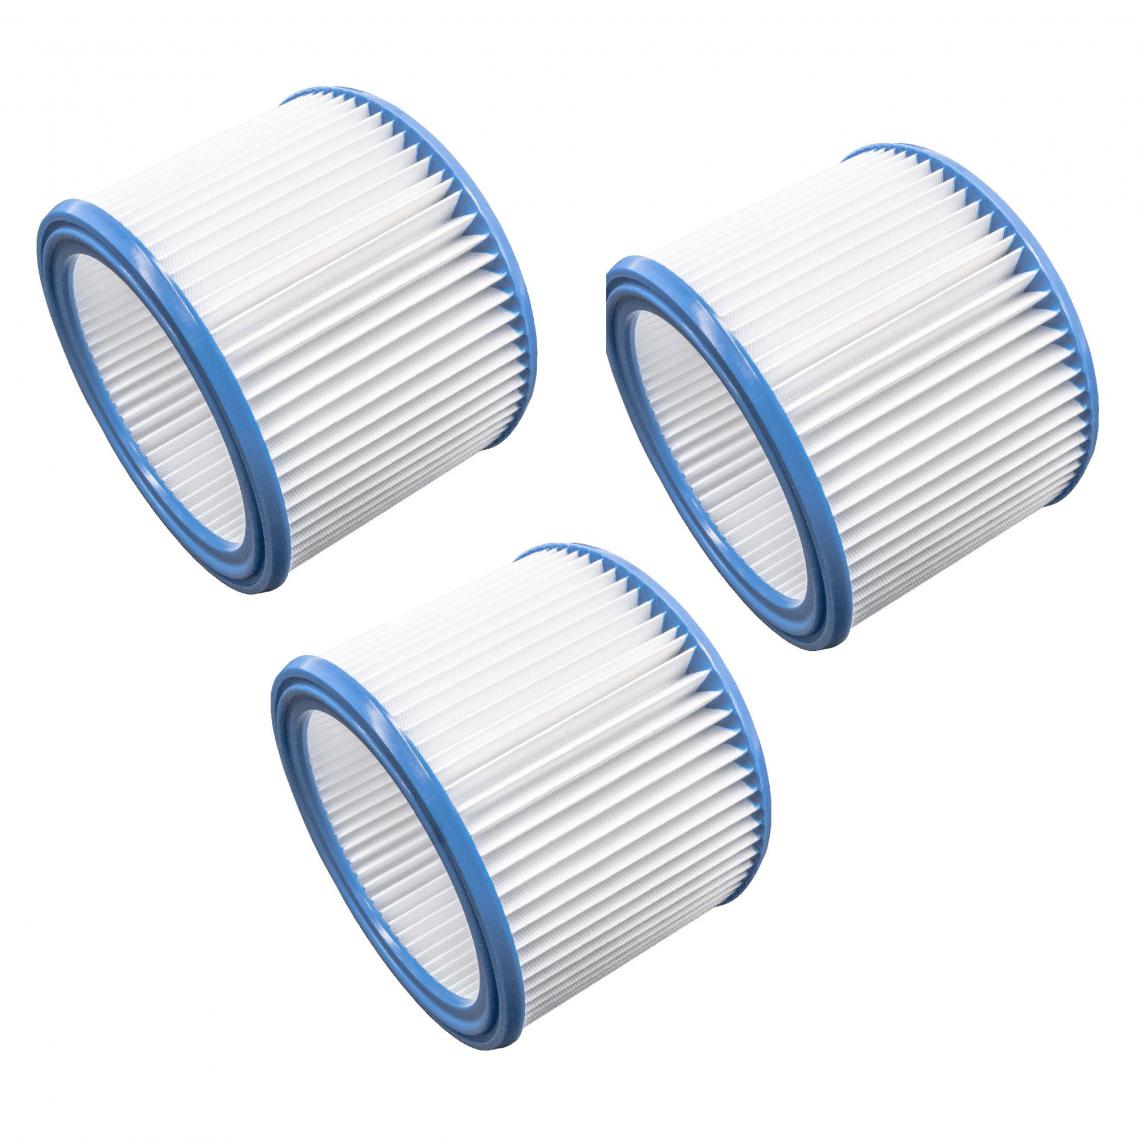 Vhbw - vhbw Set de filtres 3x Filtre plissé compatible avec Nilfisk / Alto / Wap Attix 550-21, 550-2M, 751 aspirateur à sec ou humide - Filtre à cartouche - Accessoire entretien des sols